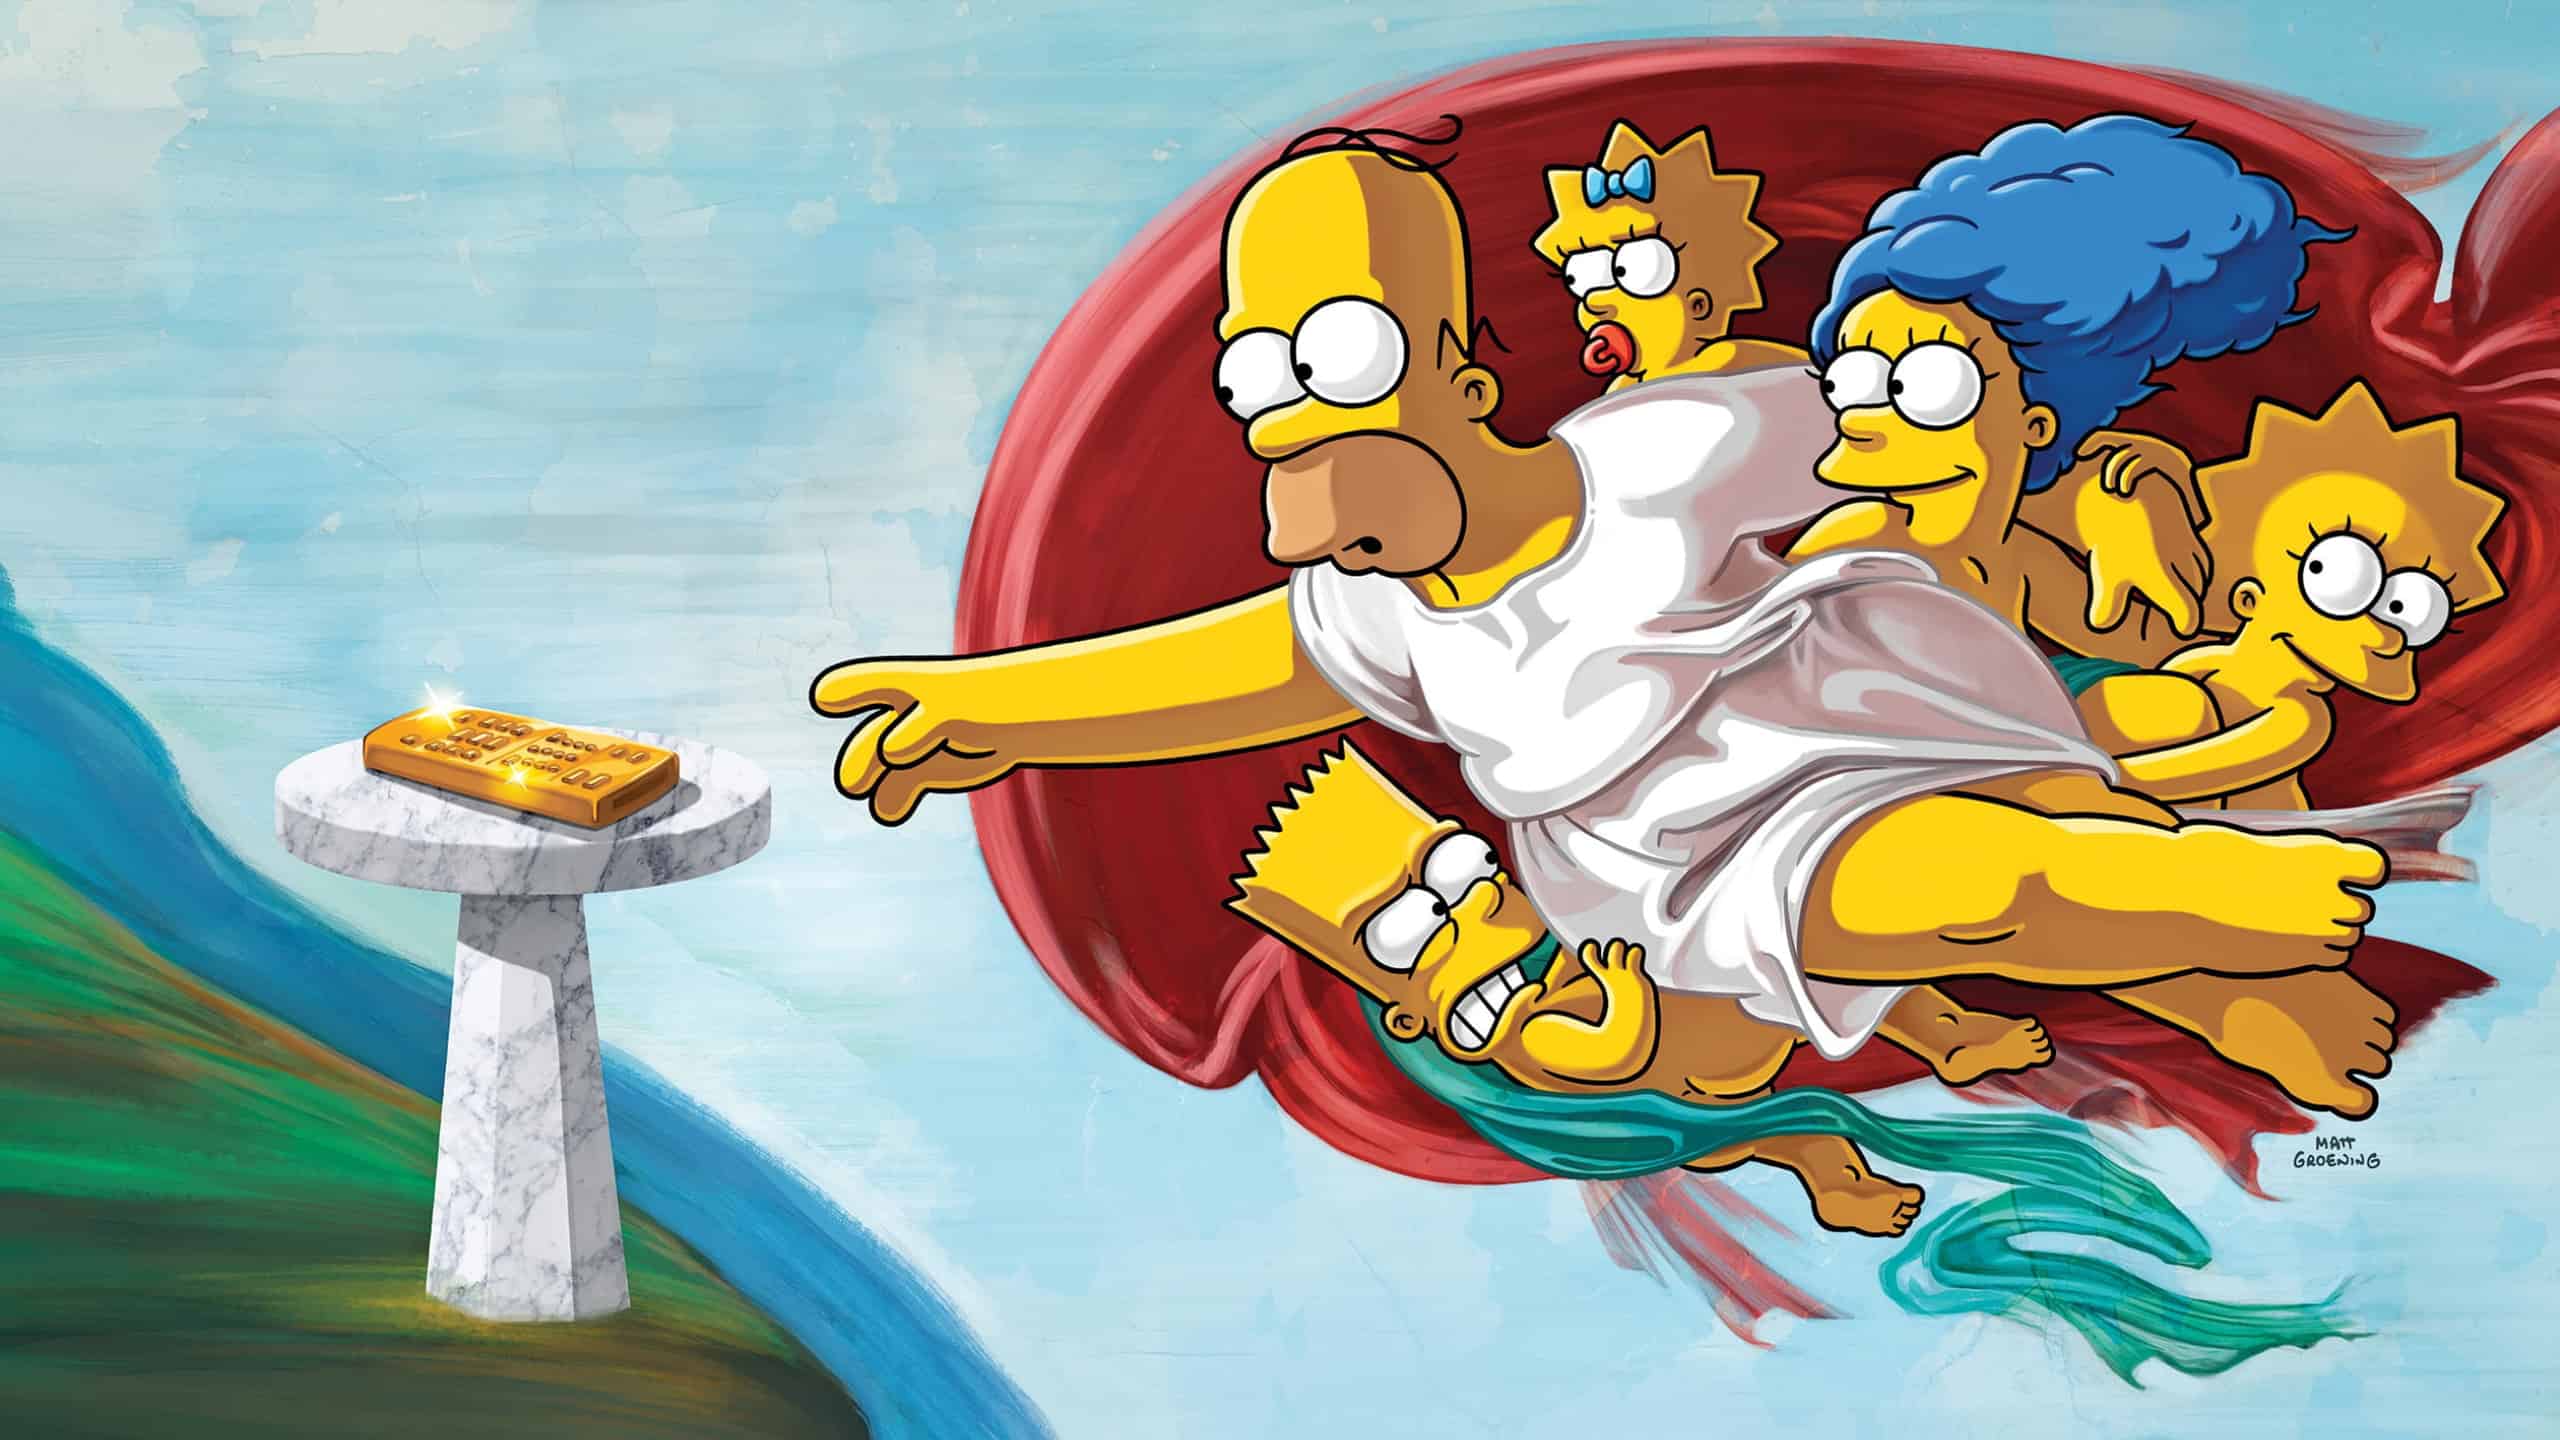 Pastiche de la peinture de Michel-Ange : “ La création d’Adam ” avec la famille Simpson.